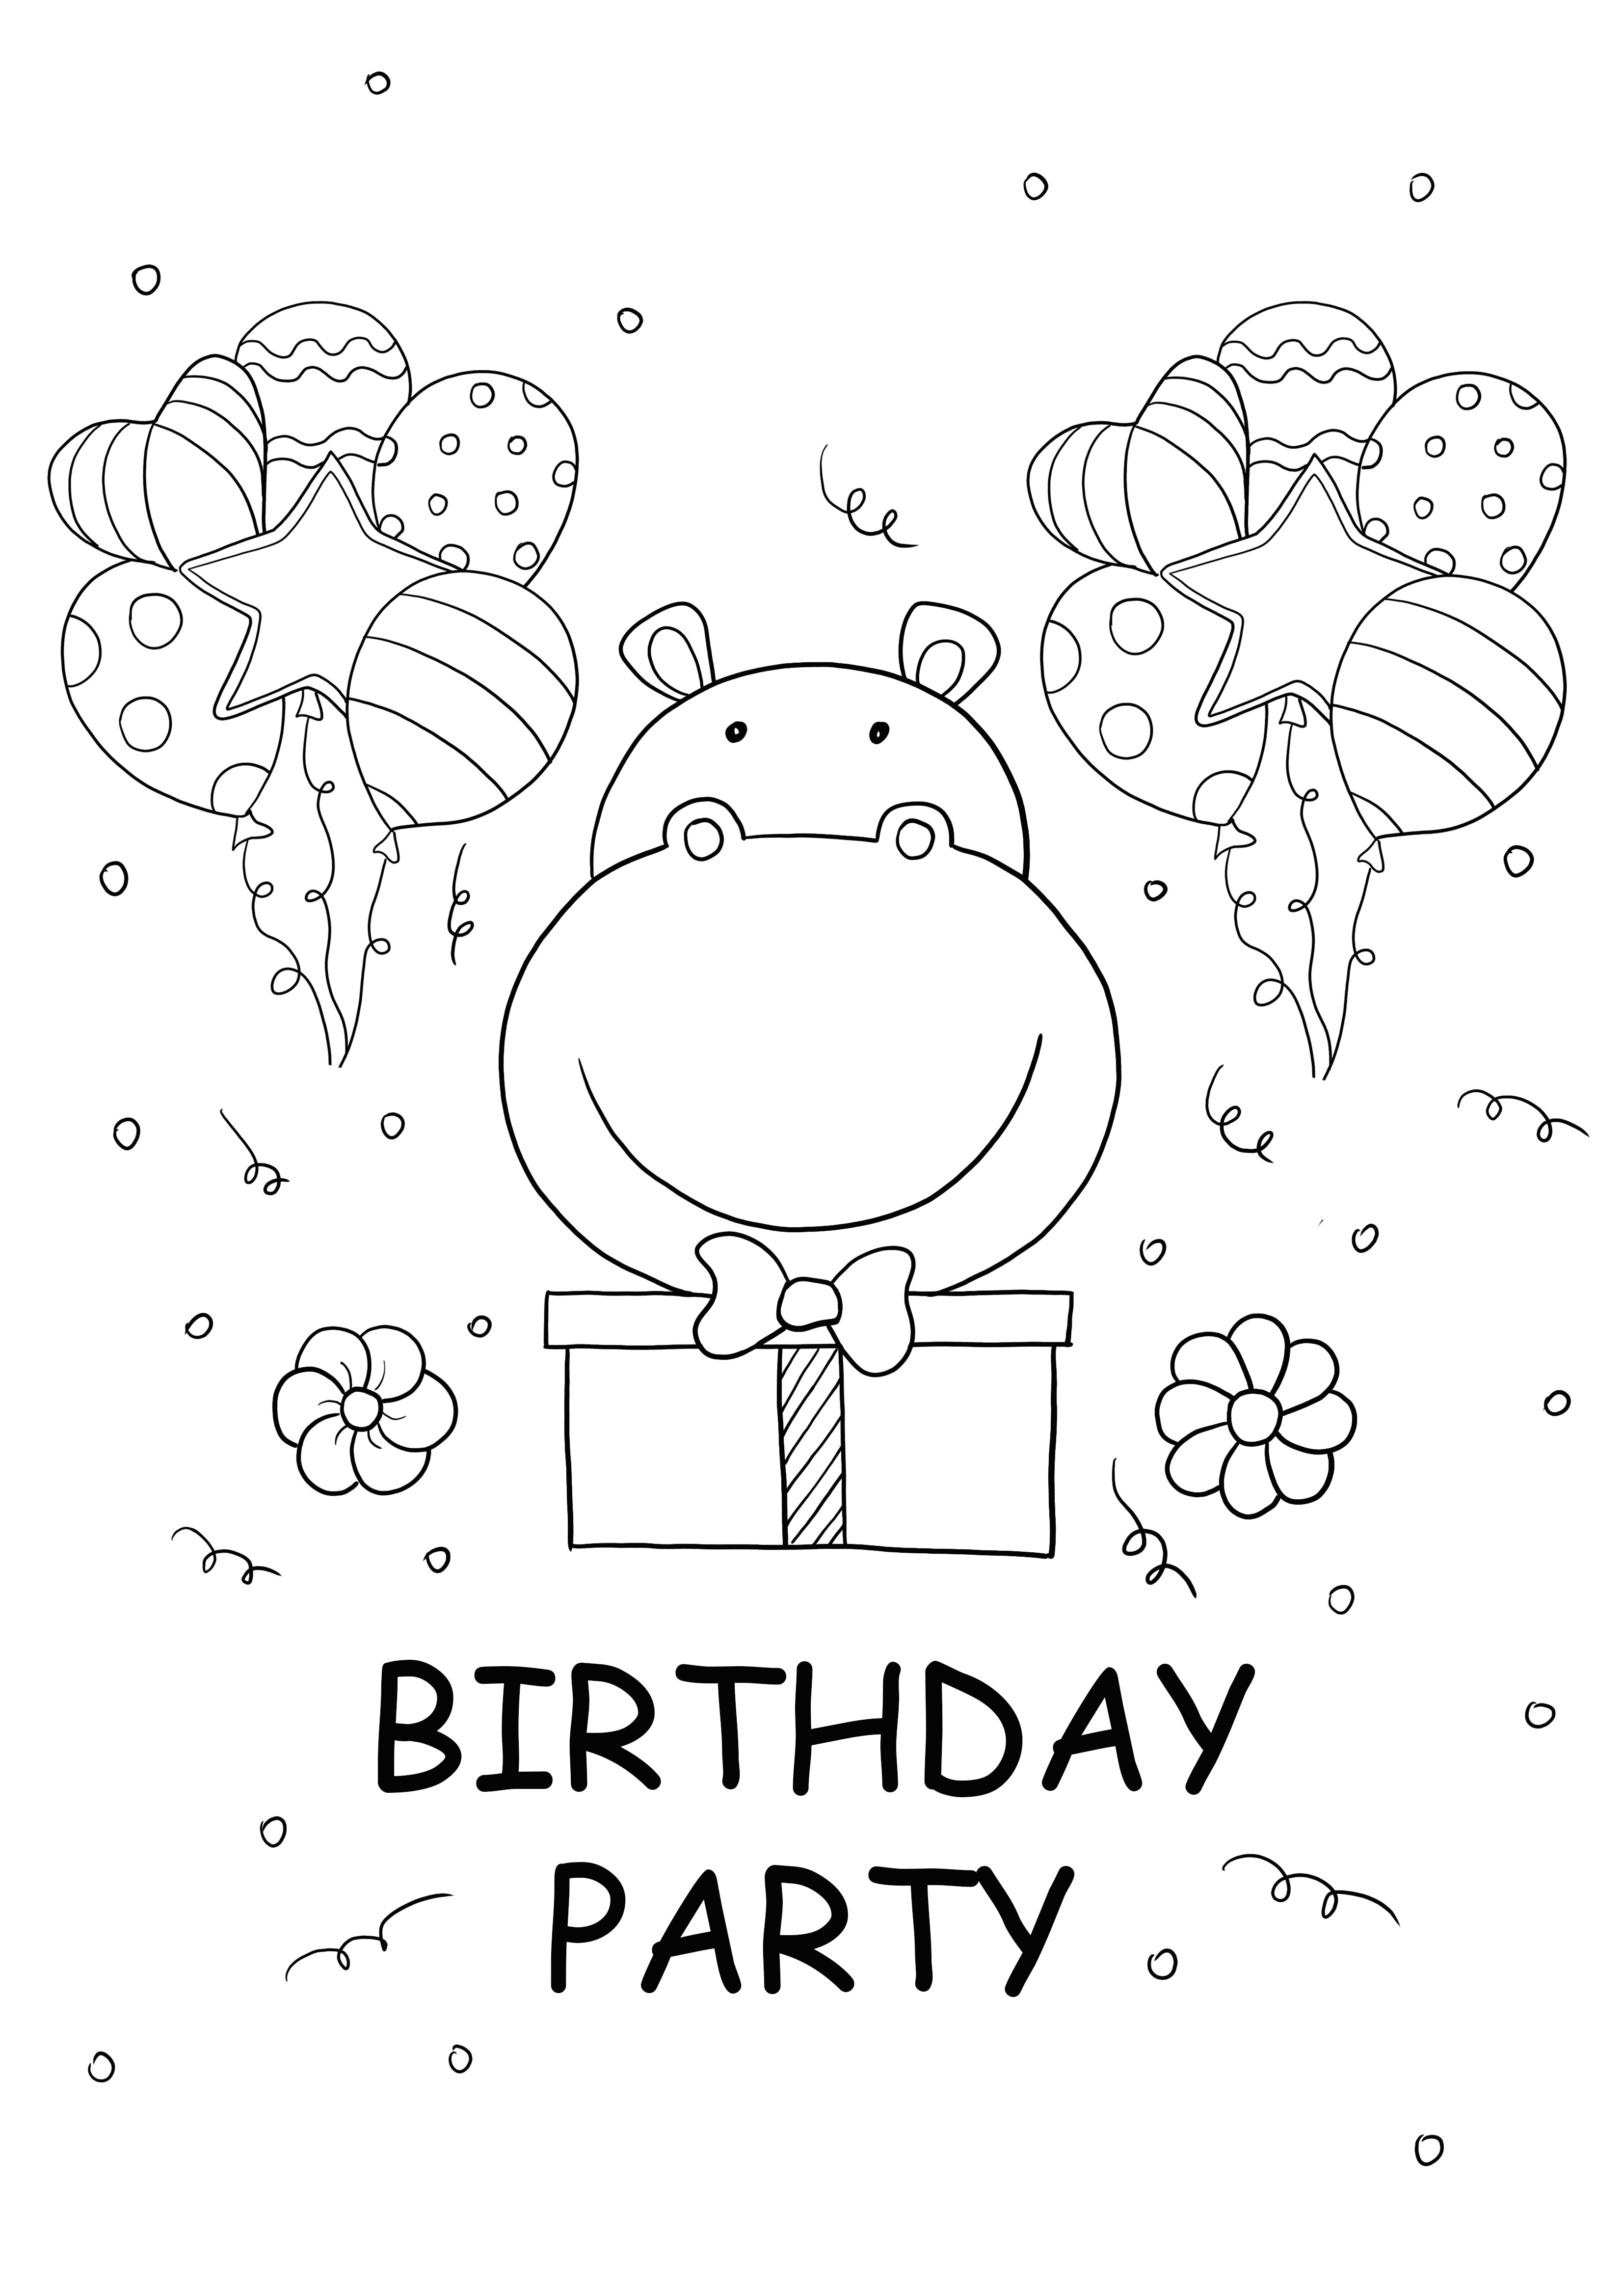 immagine di ippopotamo e festa di compleanno da stampare gratuitamente